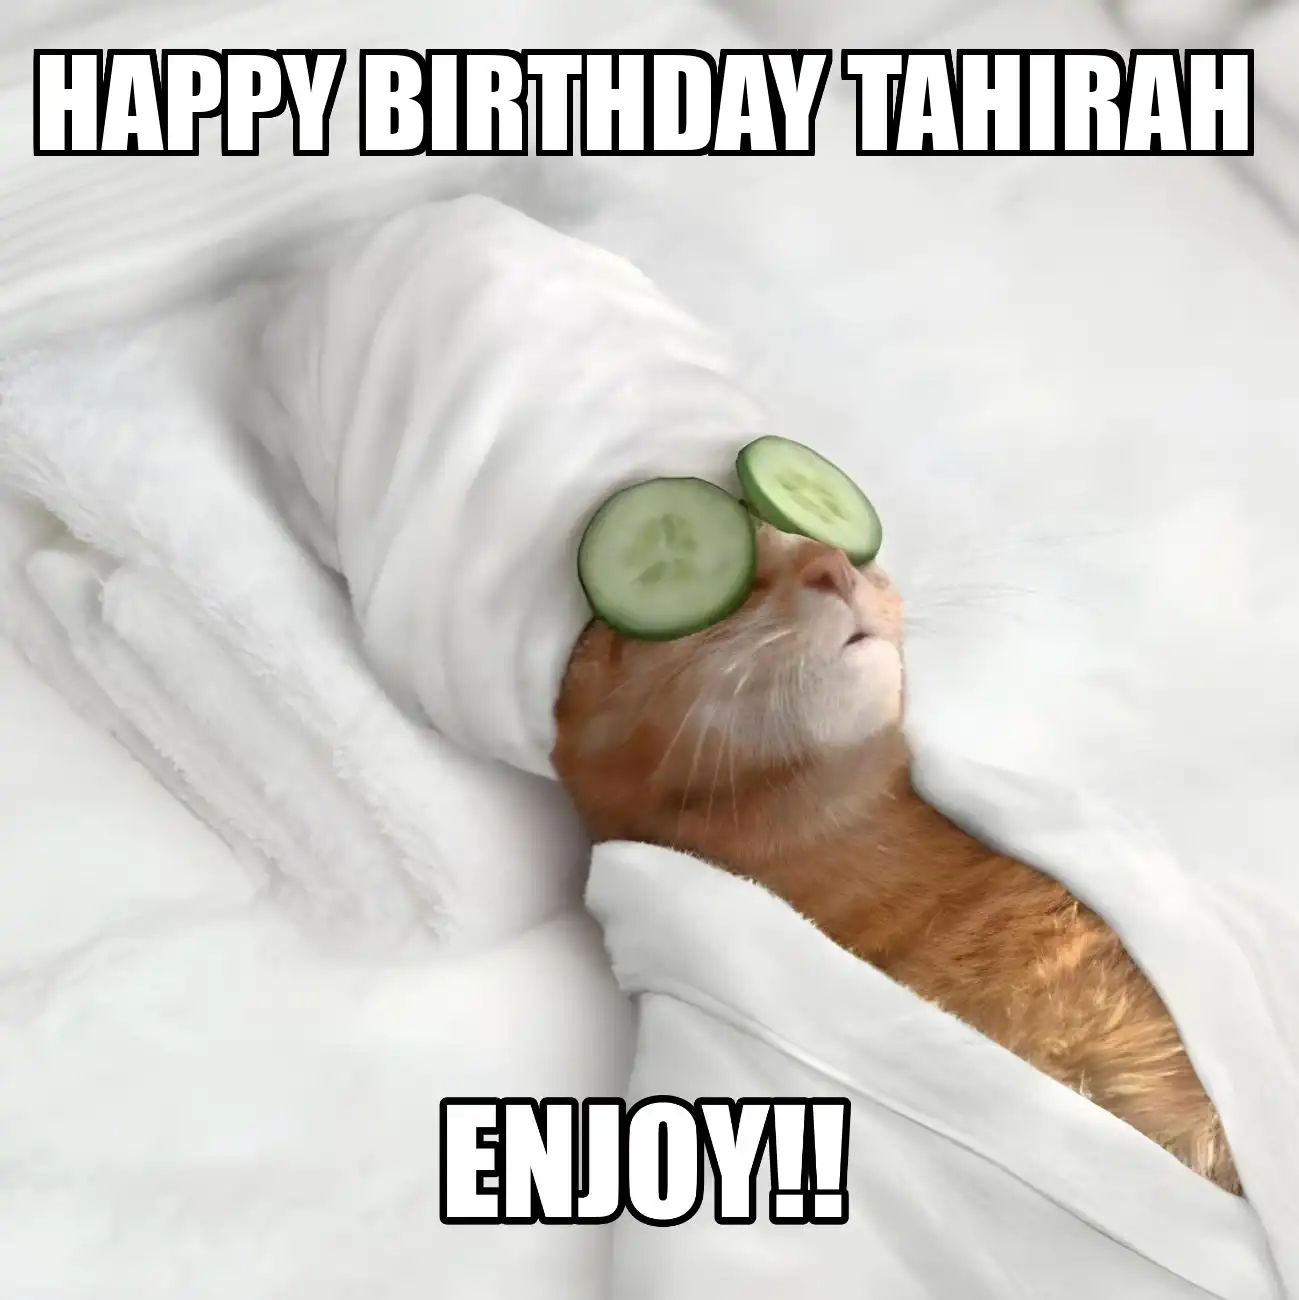 Happy Birthday Tahirah Enjoy Cat Meme